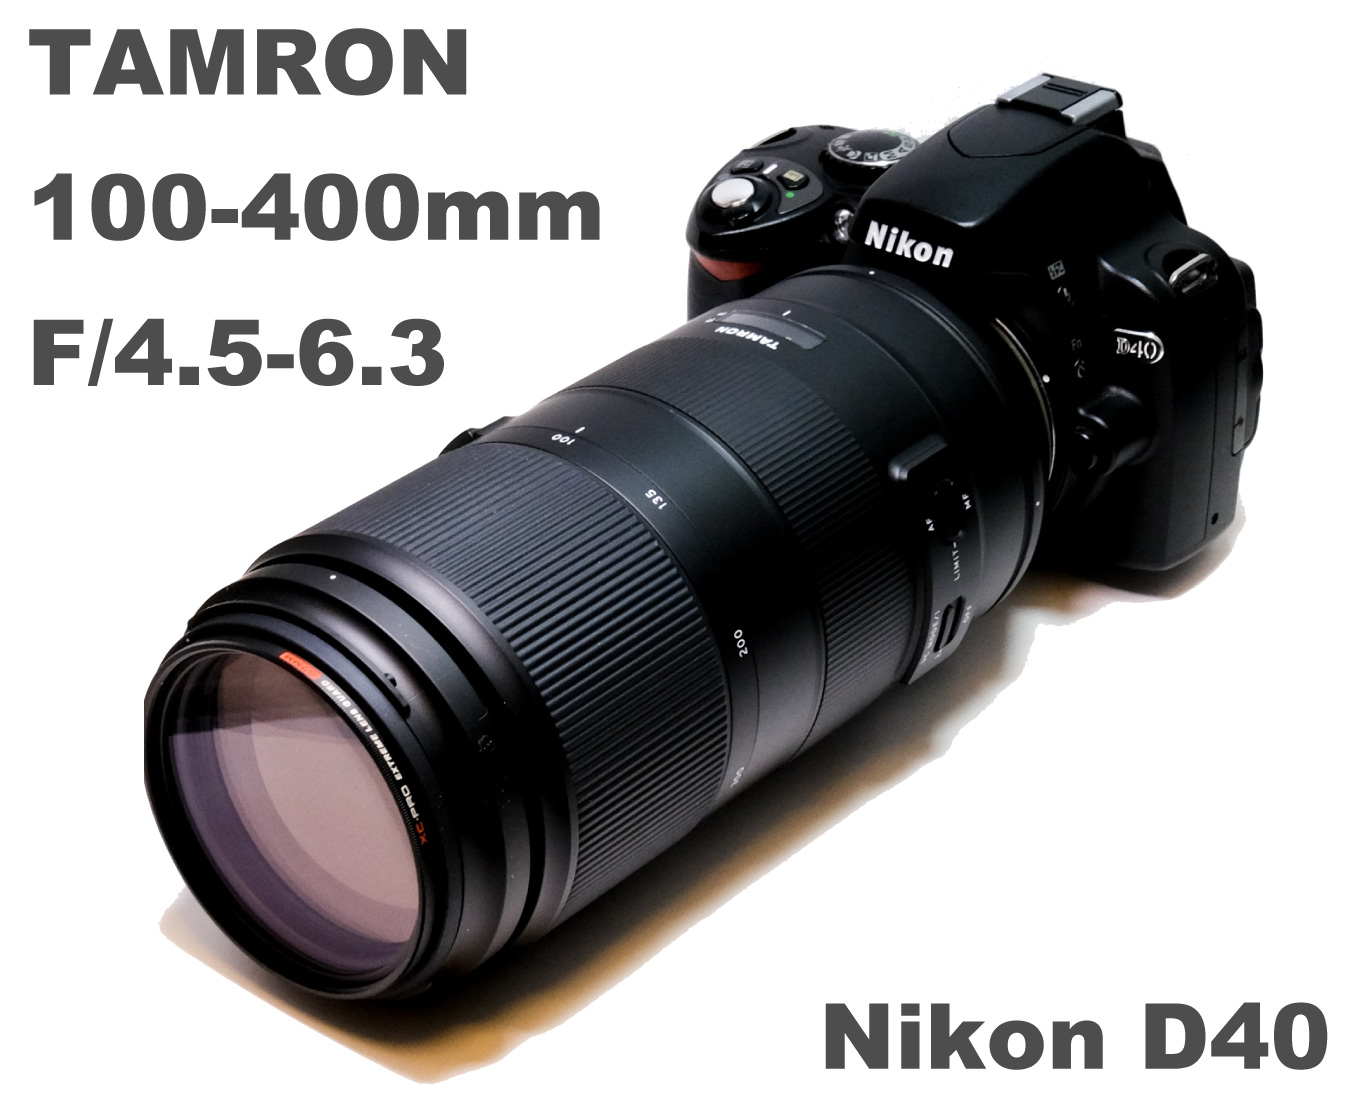 TAMRON 100-400mm F/4.5-6.3 Di VC USDをNikon D40に装着して野鳥撮影に挑んだら惨敗…